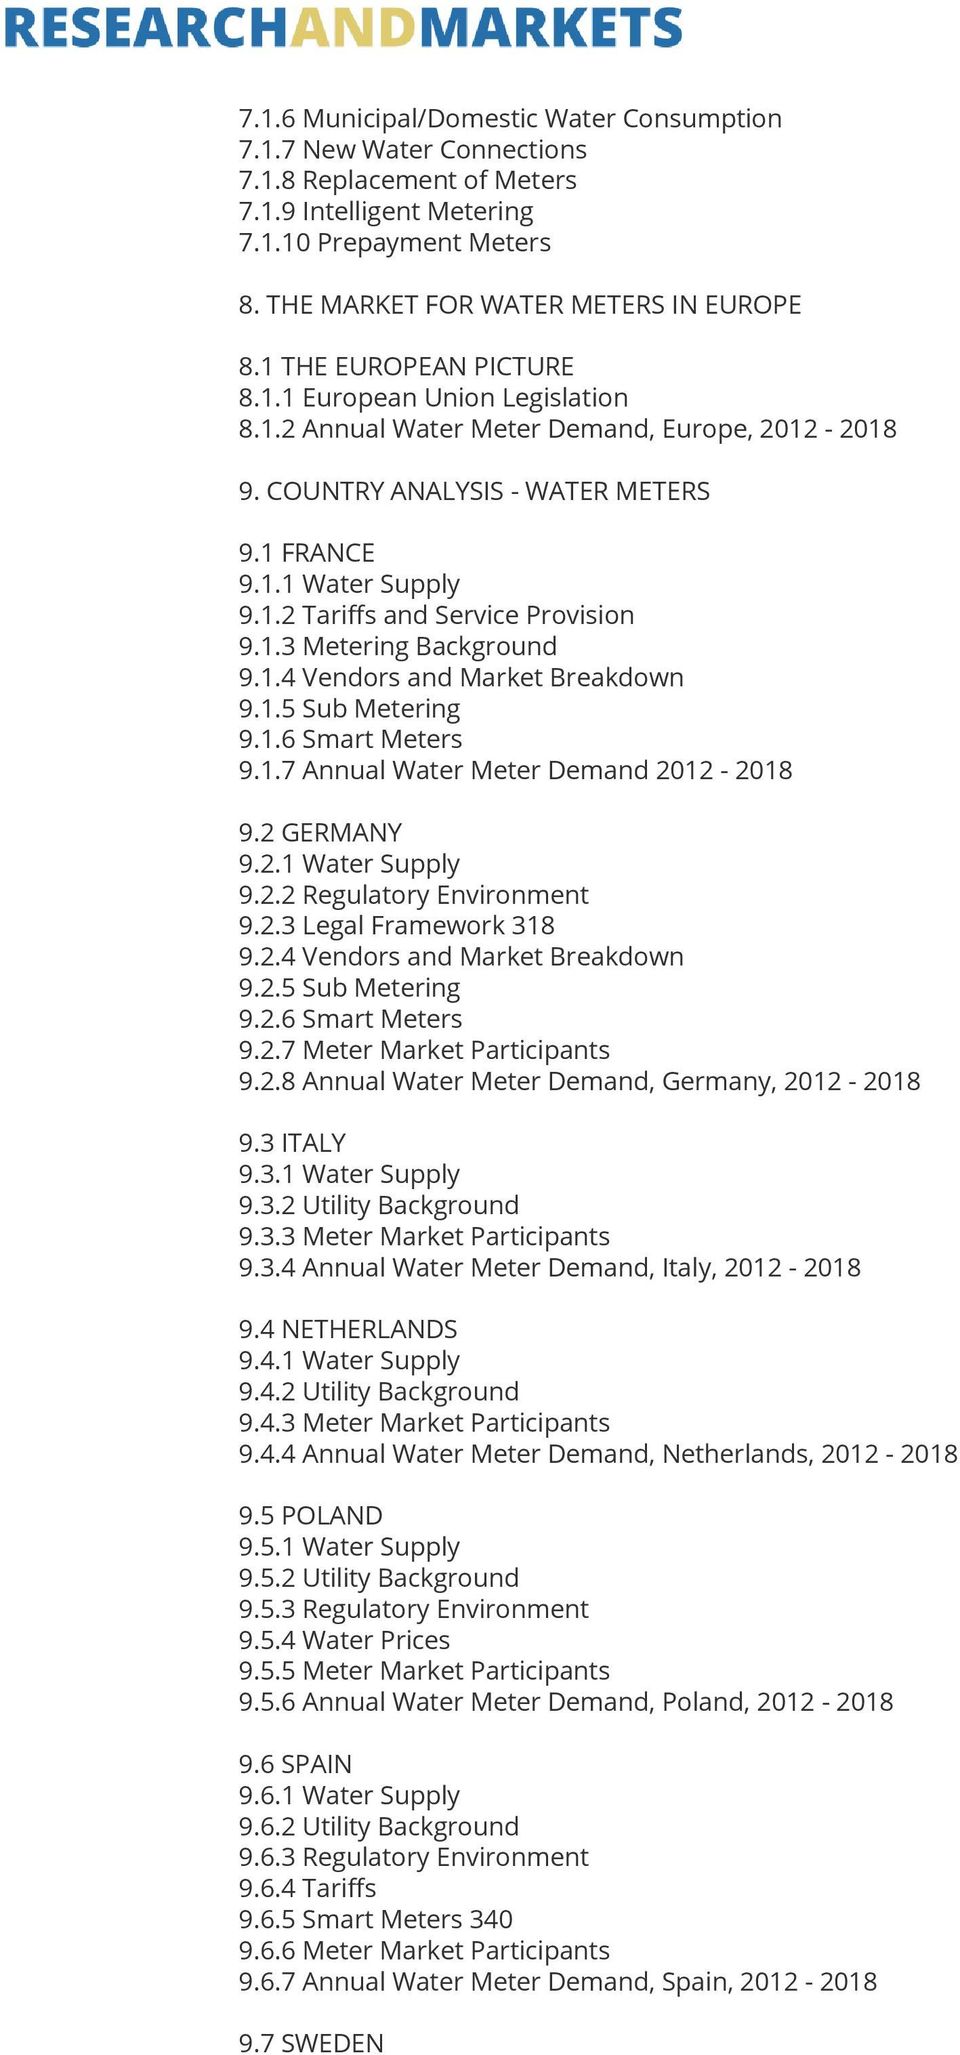 1.3 Metering Background 9.1.4 Vendors and Market Breakdown 9.1.5 Sub Metering 9.1.6 Smart Meters 9.1.7 Annual Water Meter Demand 2012-2018 9.2 GERMANY 9.2.1 Water Supply 9.2.2 Regulatory Environment 9.